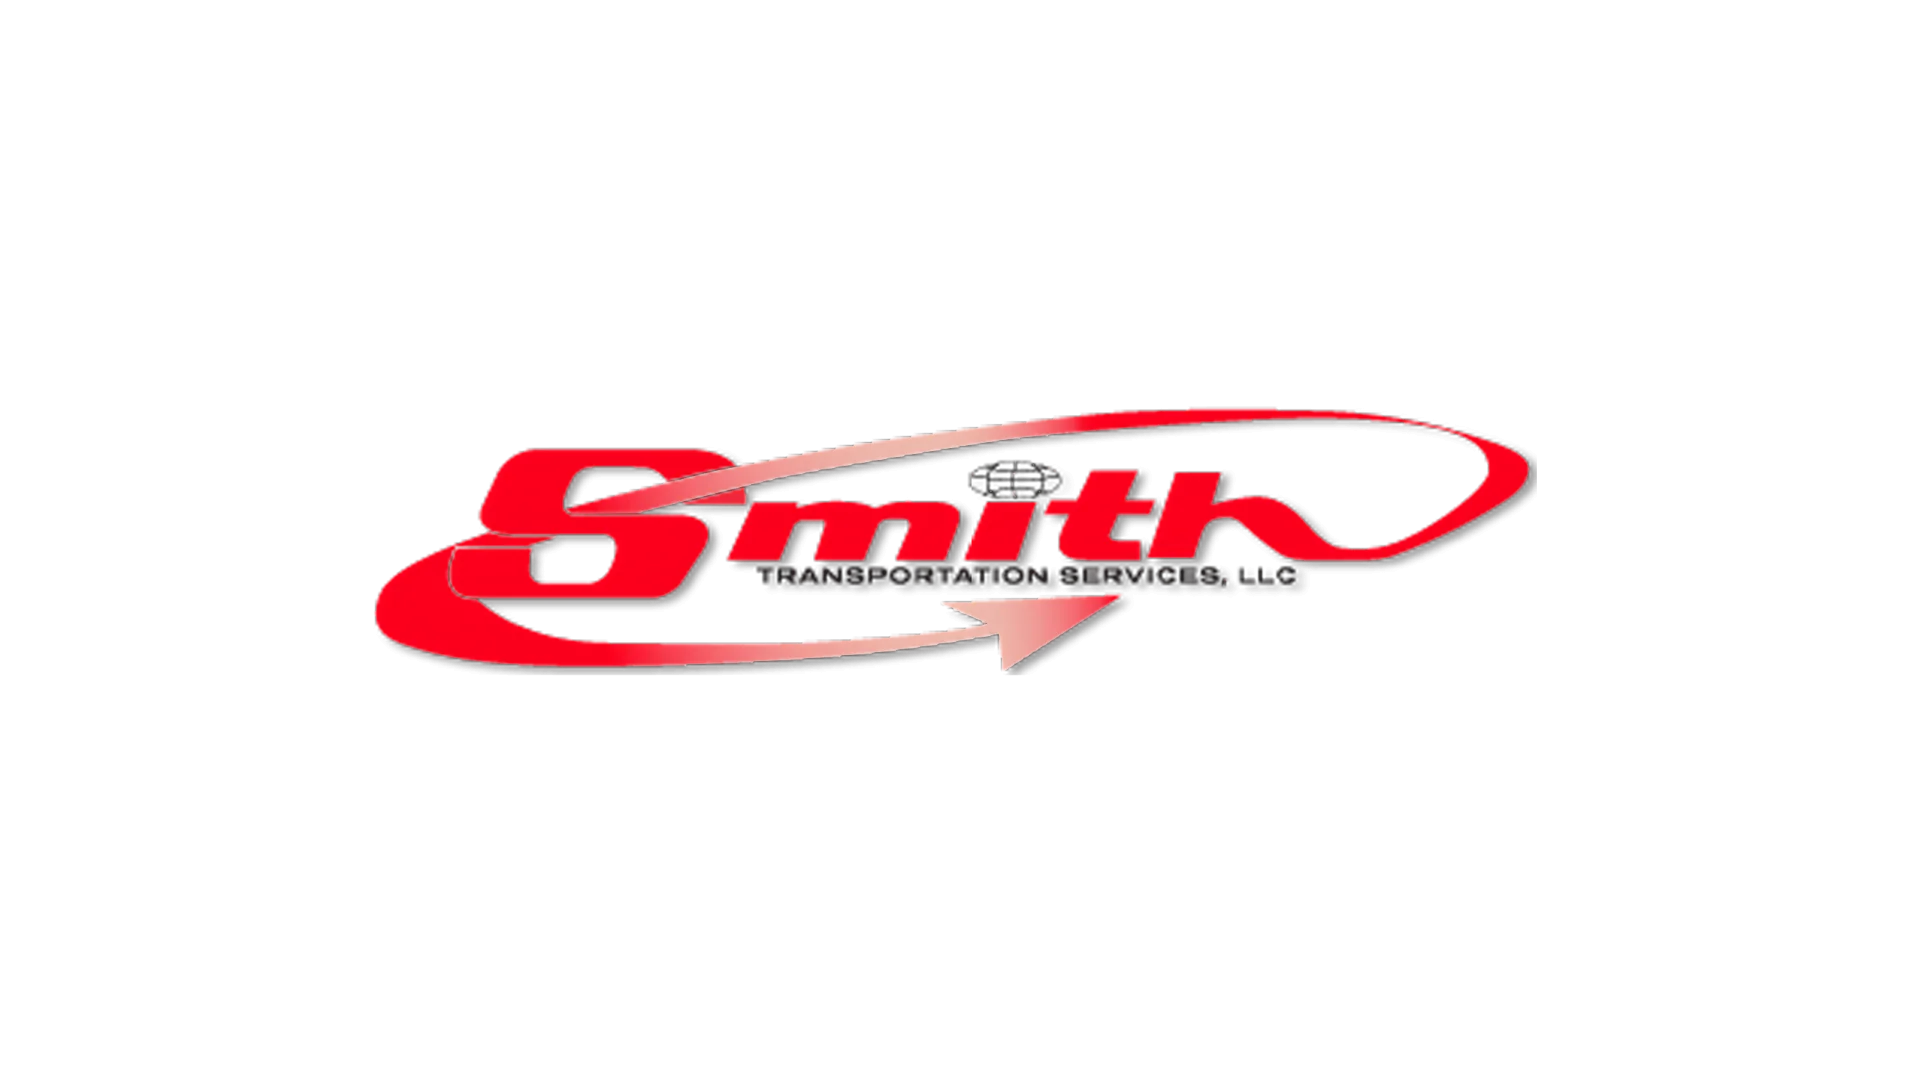 smith transportation rates background logo